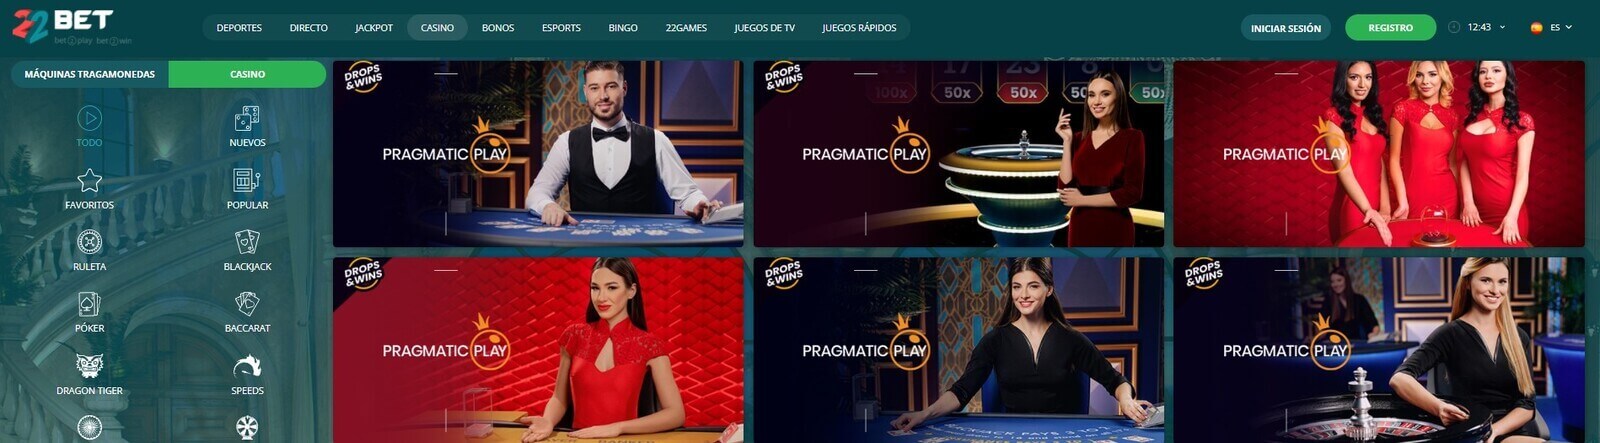 22Bet Casino online en Paraguay